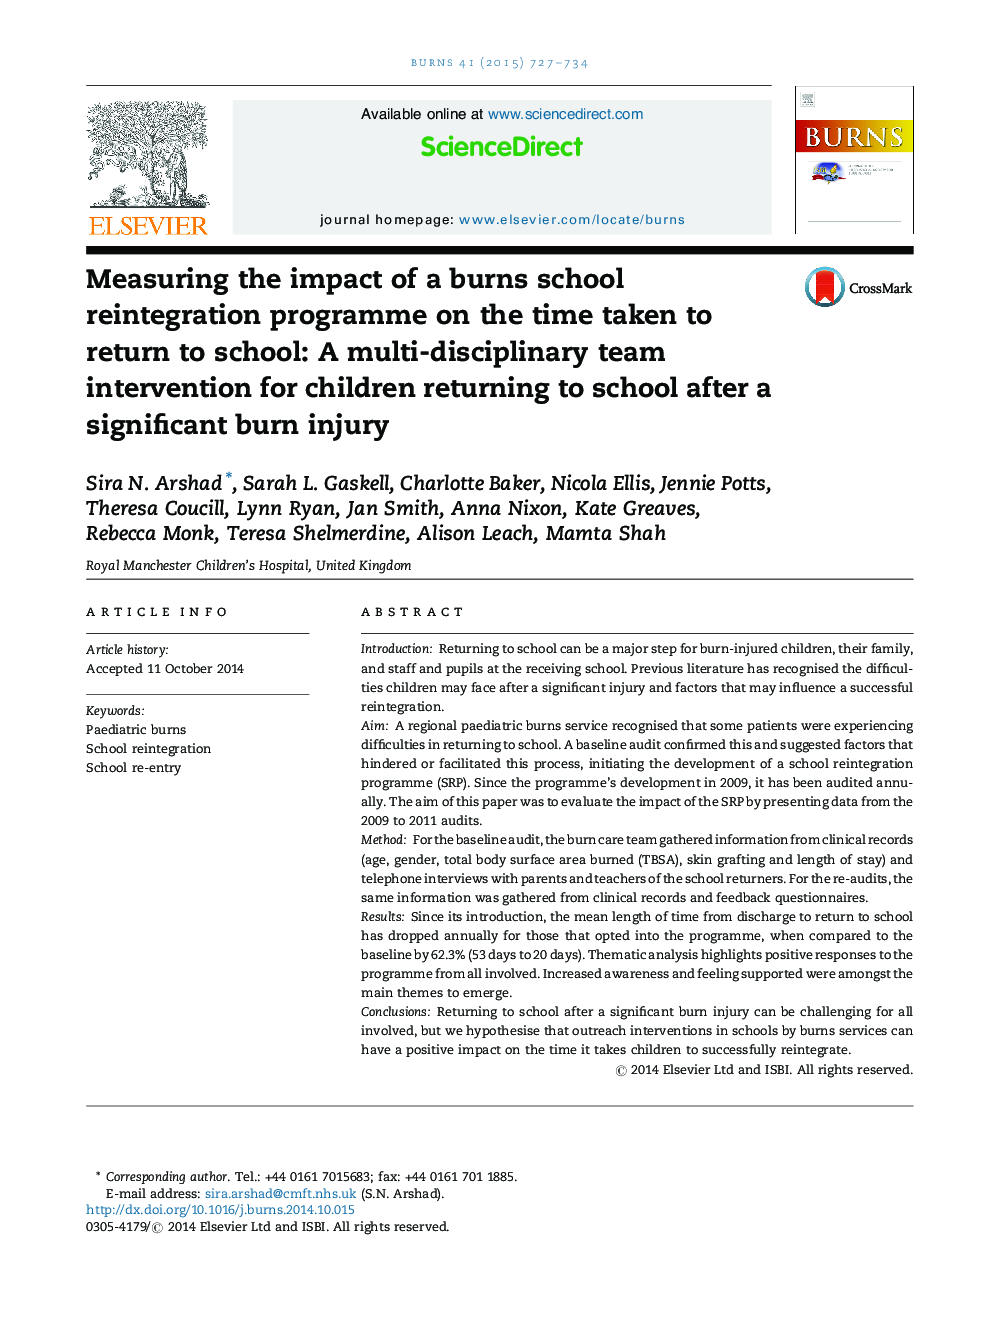 اندازهگیری تأثیر یک برنامه ادغام مجدد مدرسه با سوختگی در زمان بازگشت به مدرسه: مداخله تیم چندرسانه ای برای کودکان پس از آسیب شدید سوختگی به مدرسه 